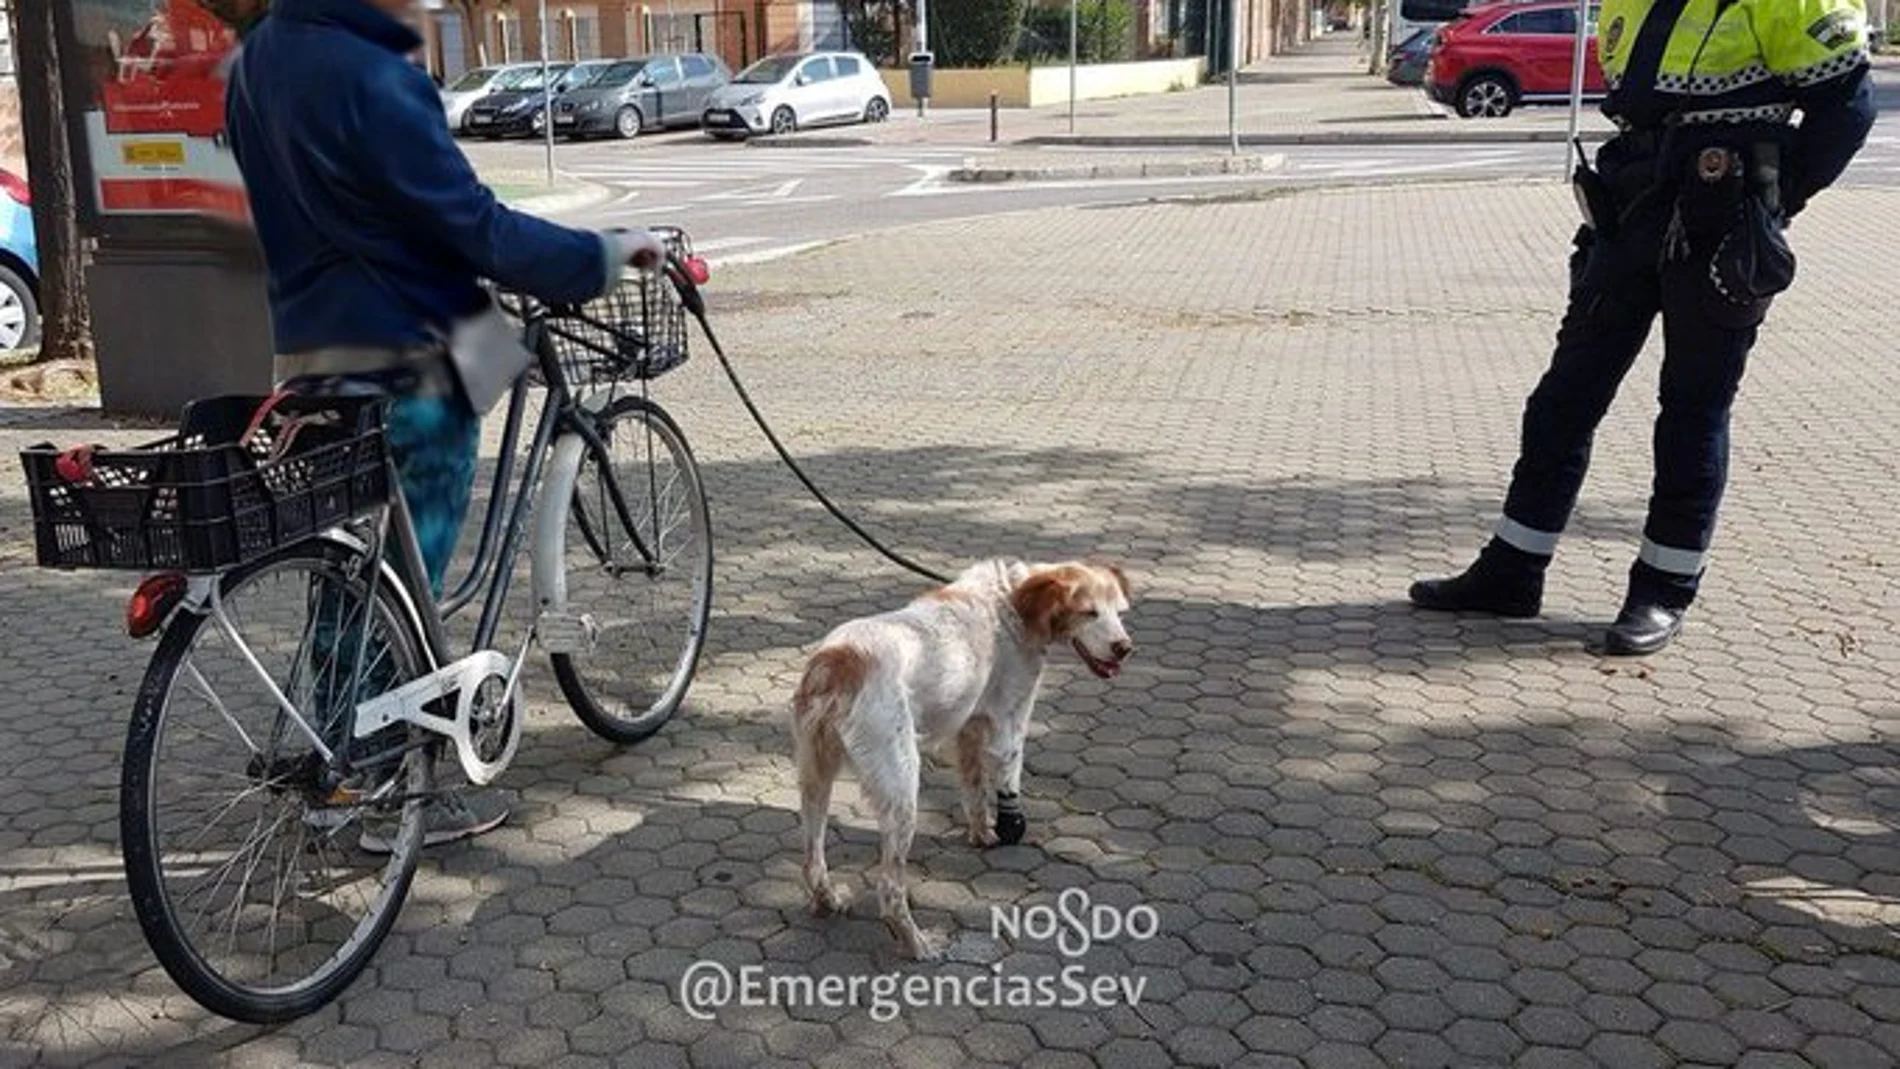 La mujer llevaba a su perro, con una prótesis, atado al manillar de su bici